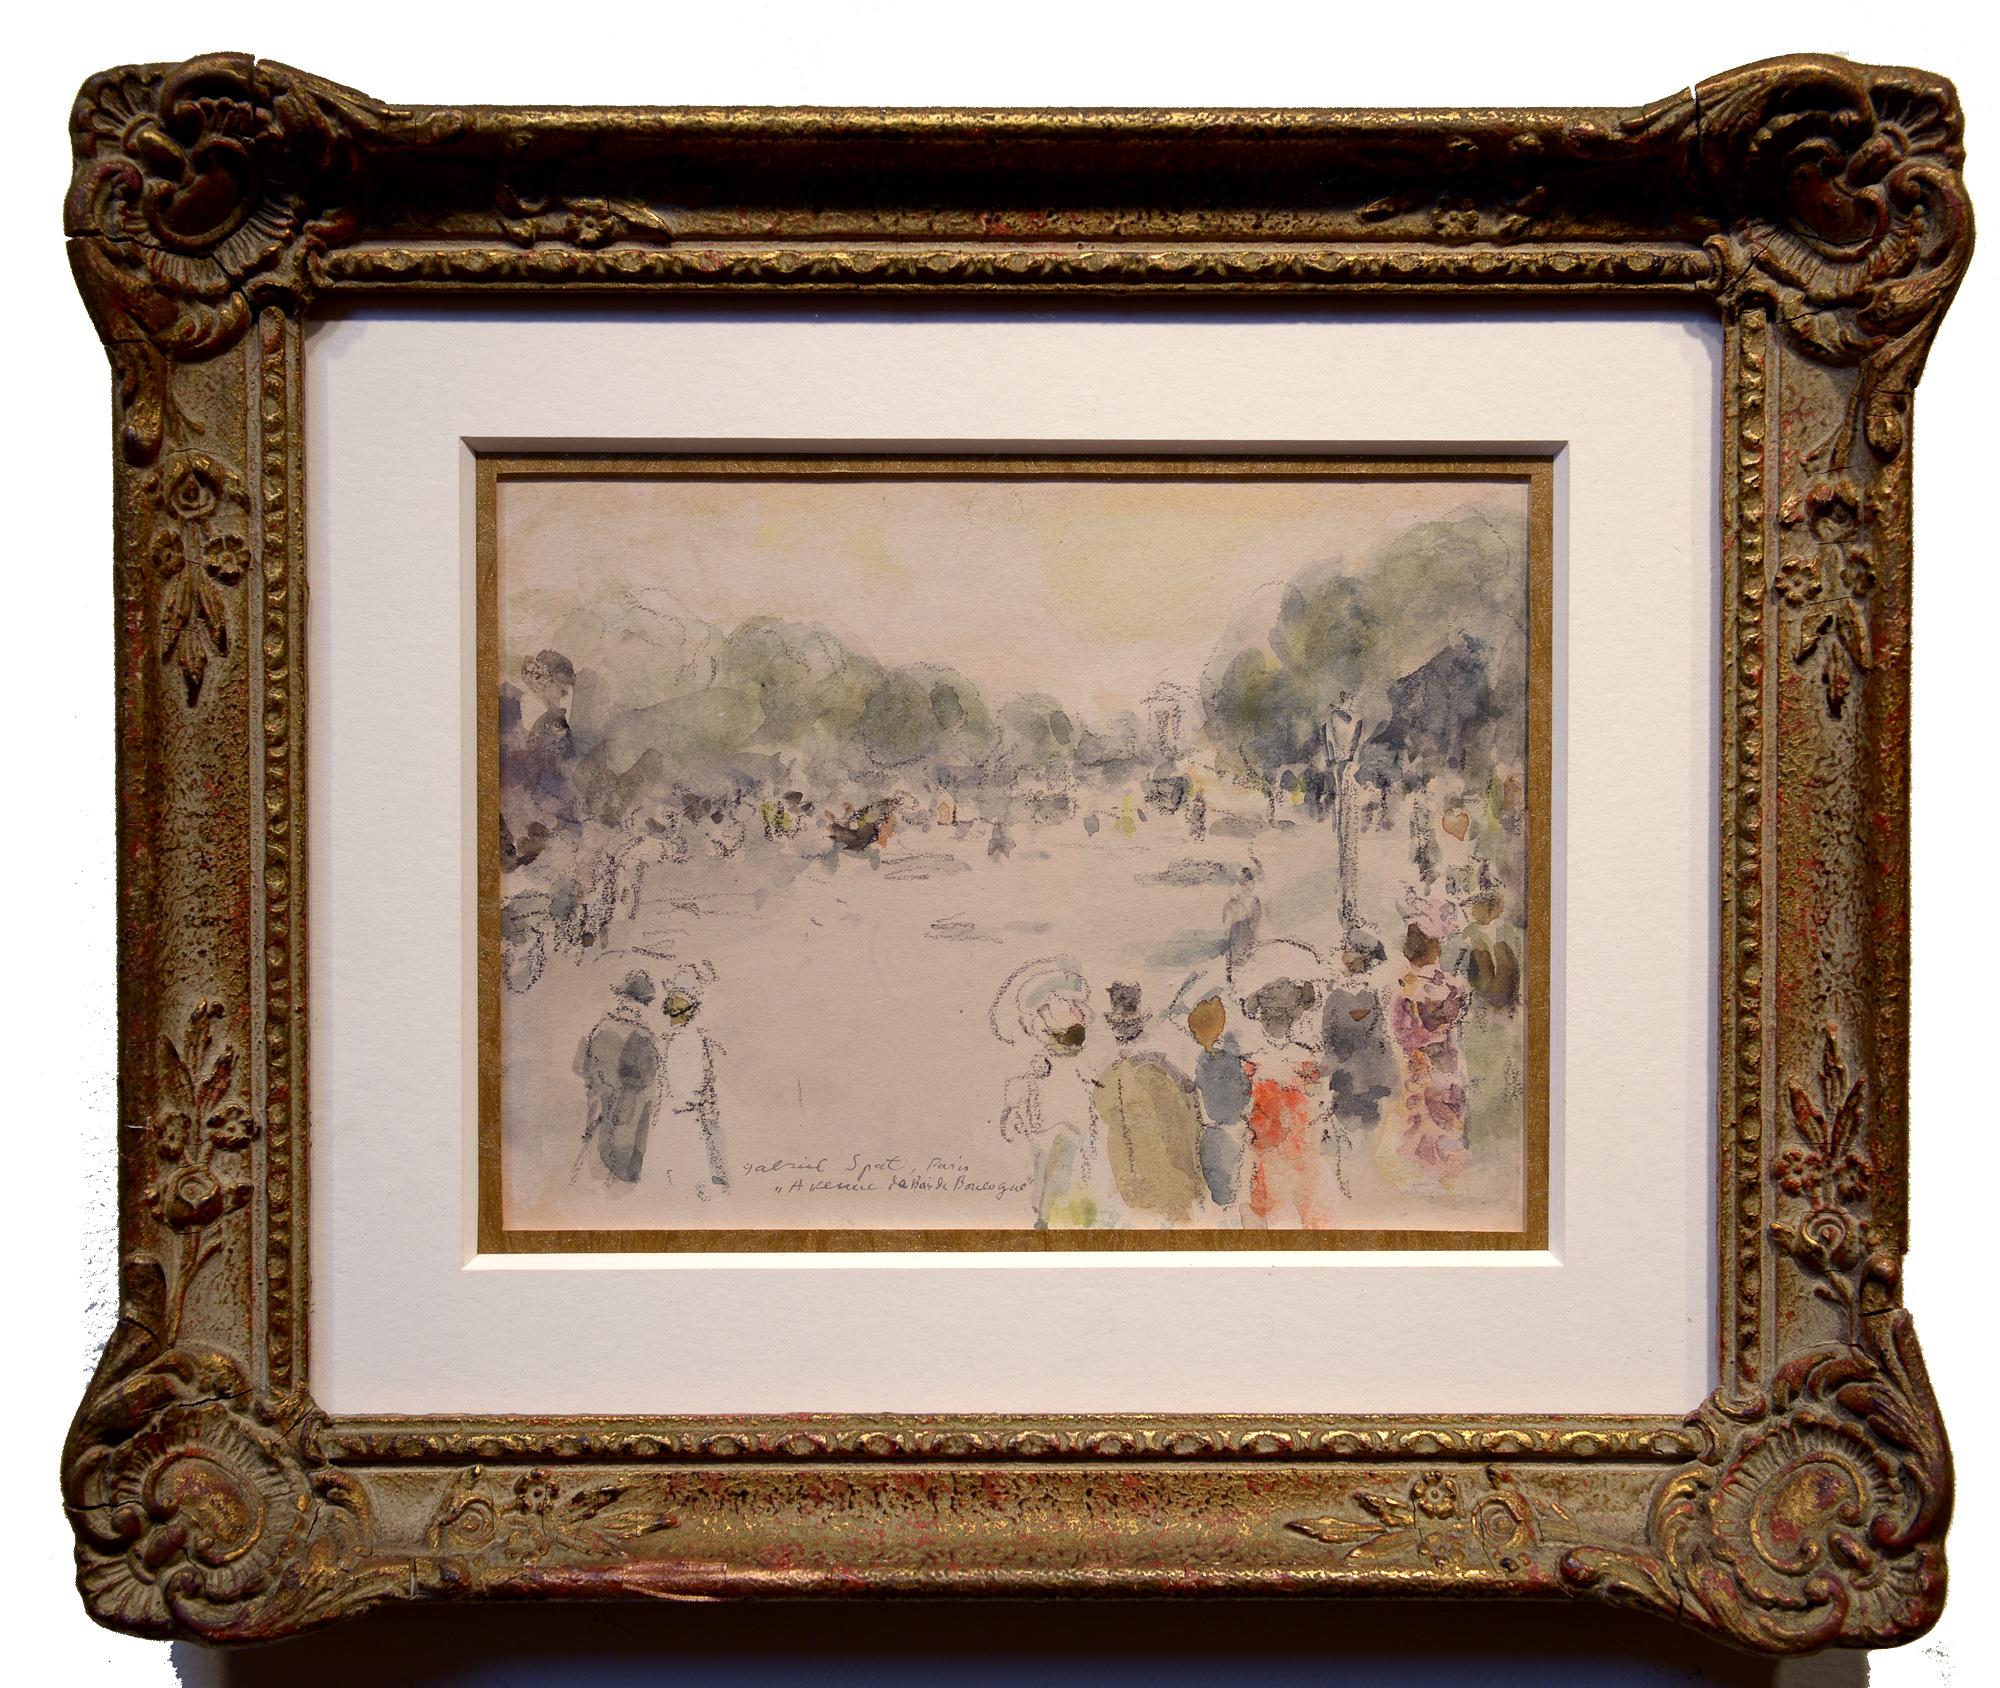 Arriving at the Bois de Boulogne, Figural, Park, Paris, France, Watercolor - Painting by Gabriel Spat